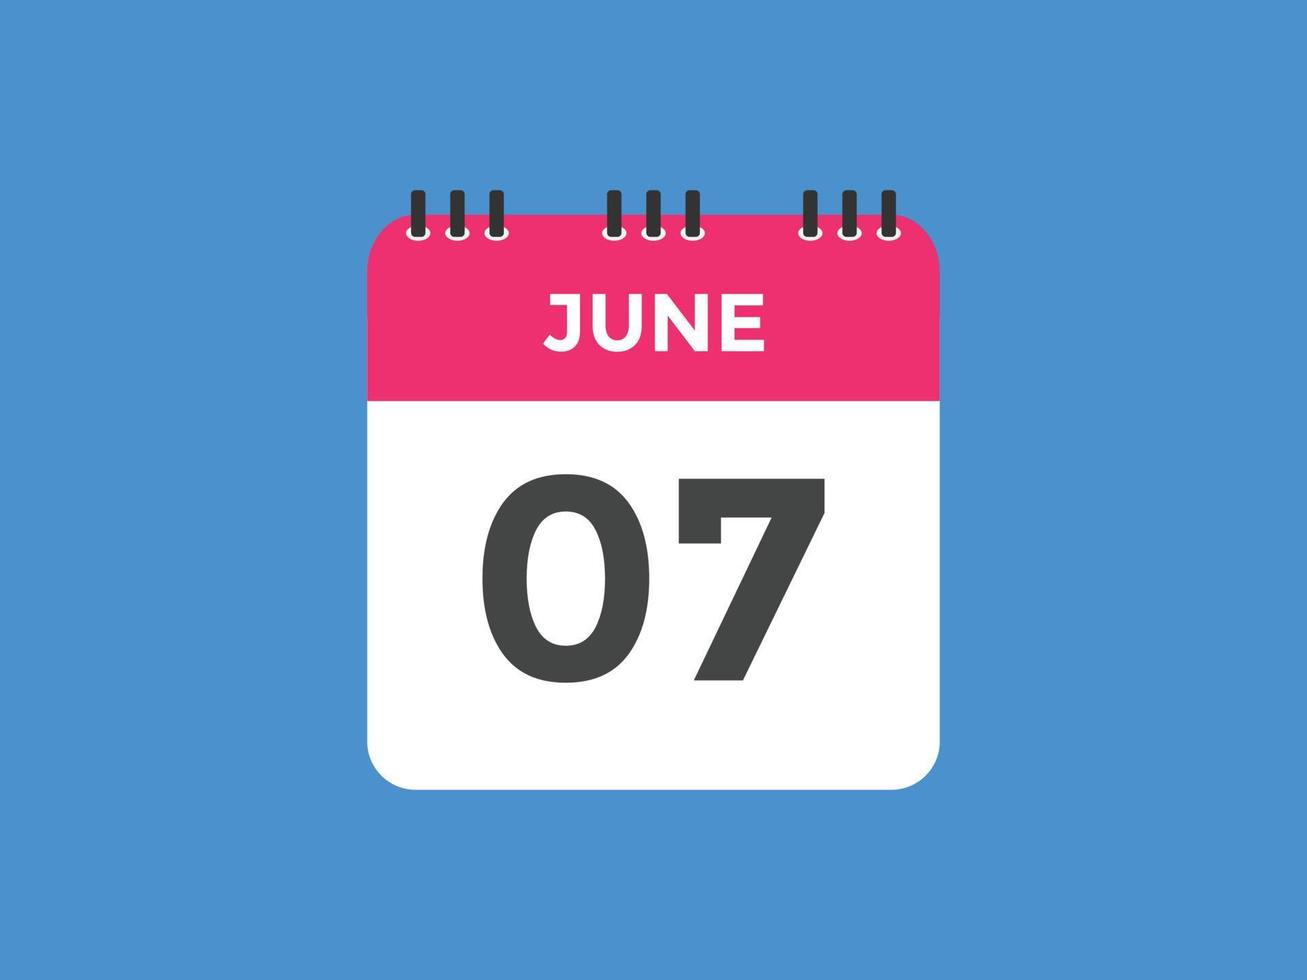 juni 7 kalender herinnering. 7e juni dagelijks kalender icoon sjabloon. kalender 7e juni icoon ontwerp sjabloon. vector illustratie